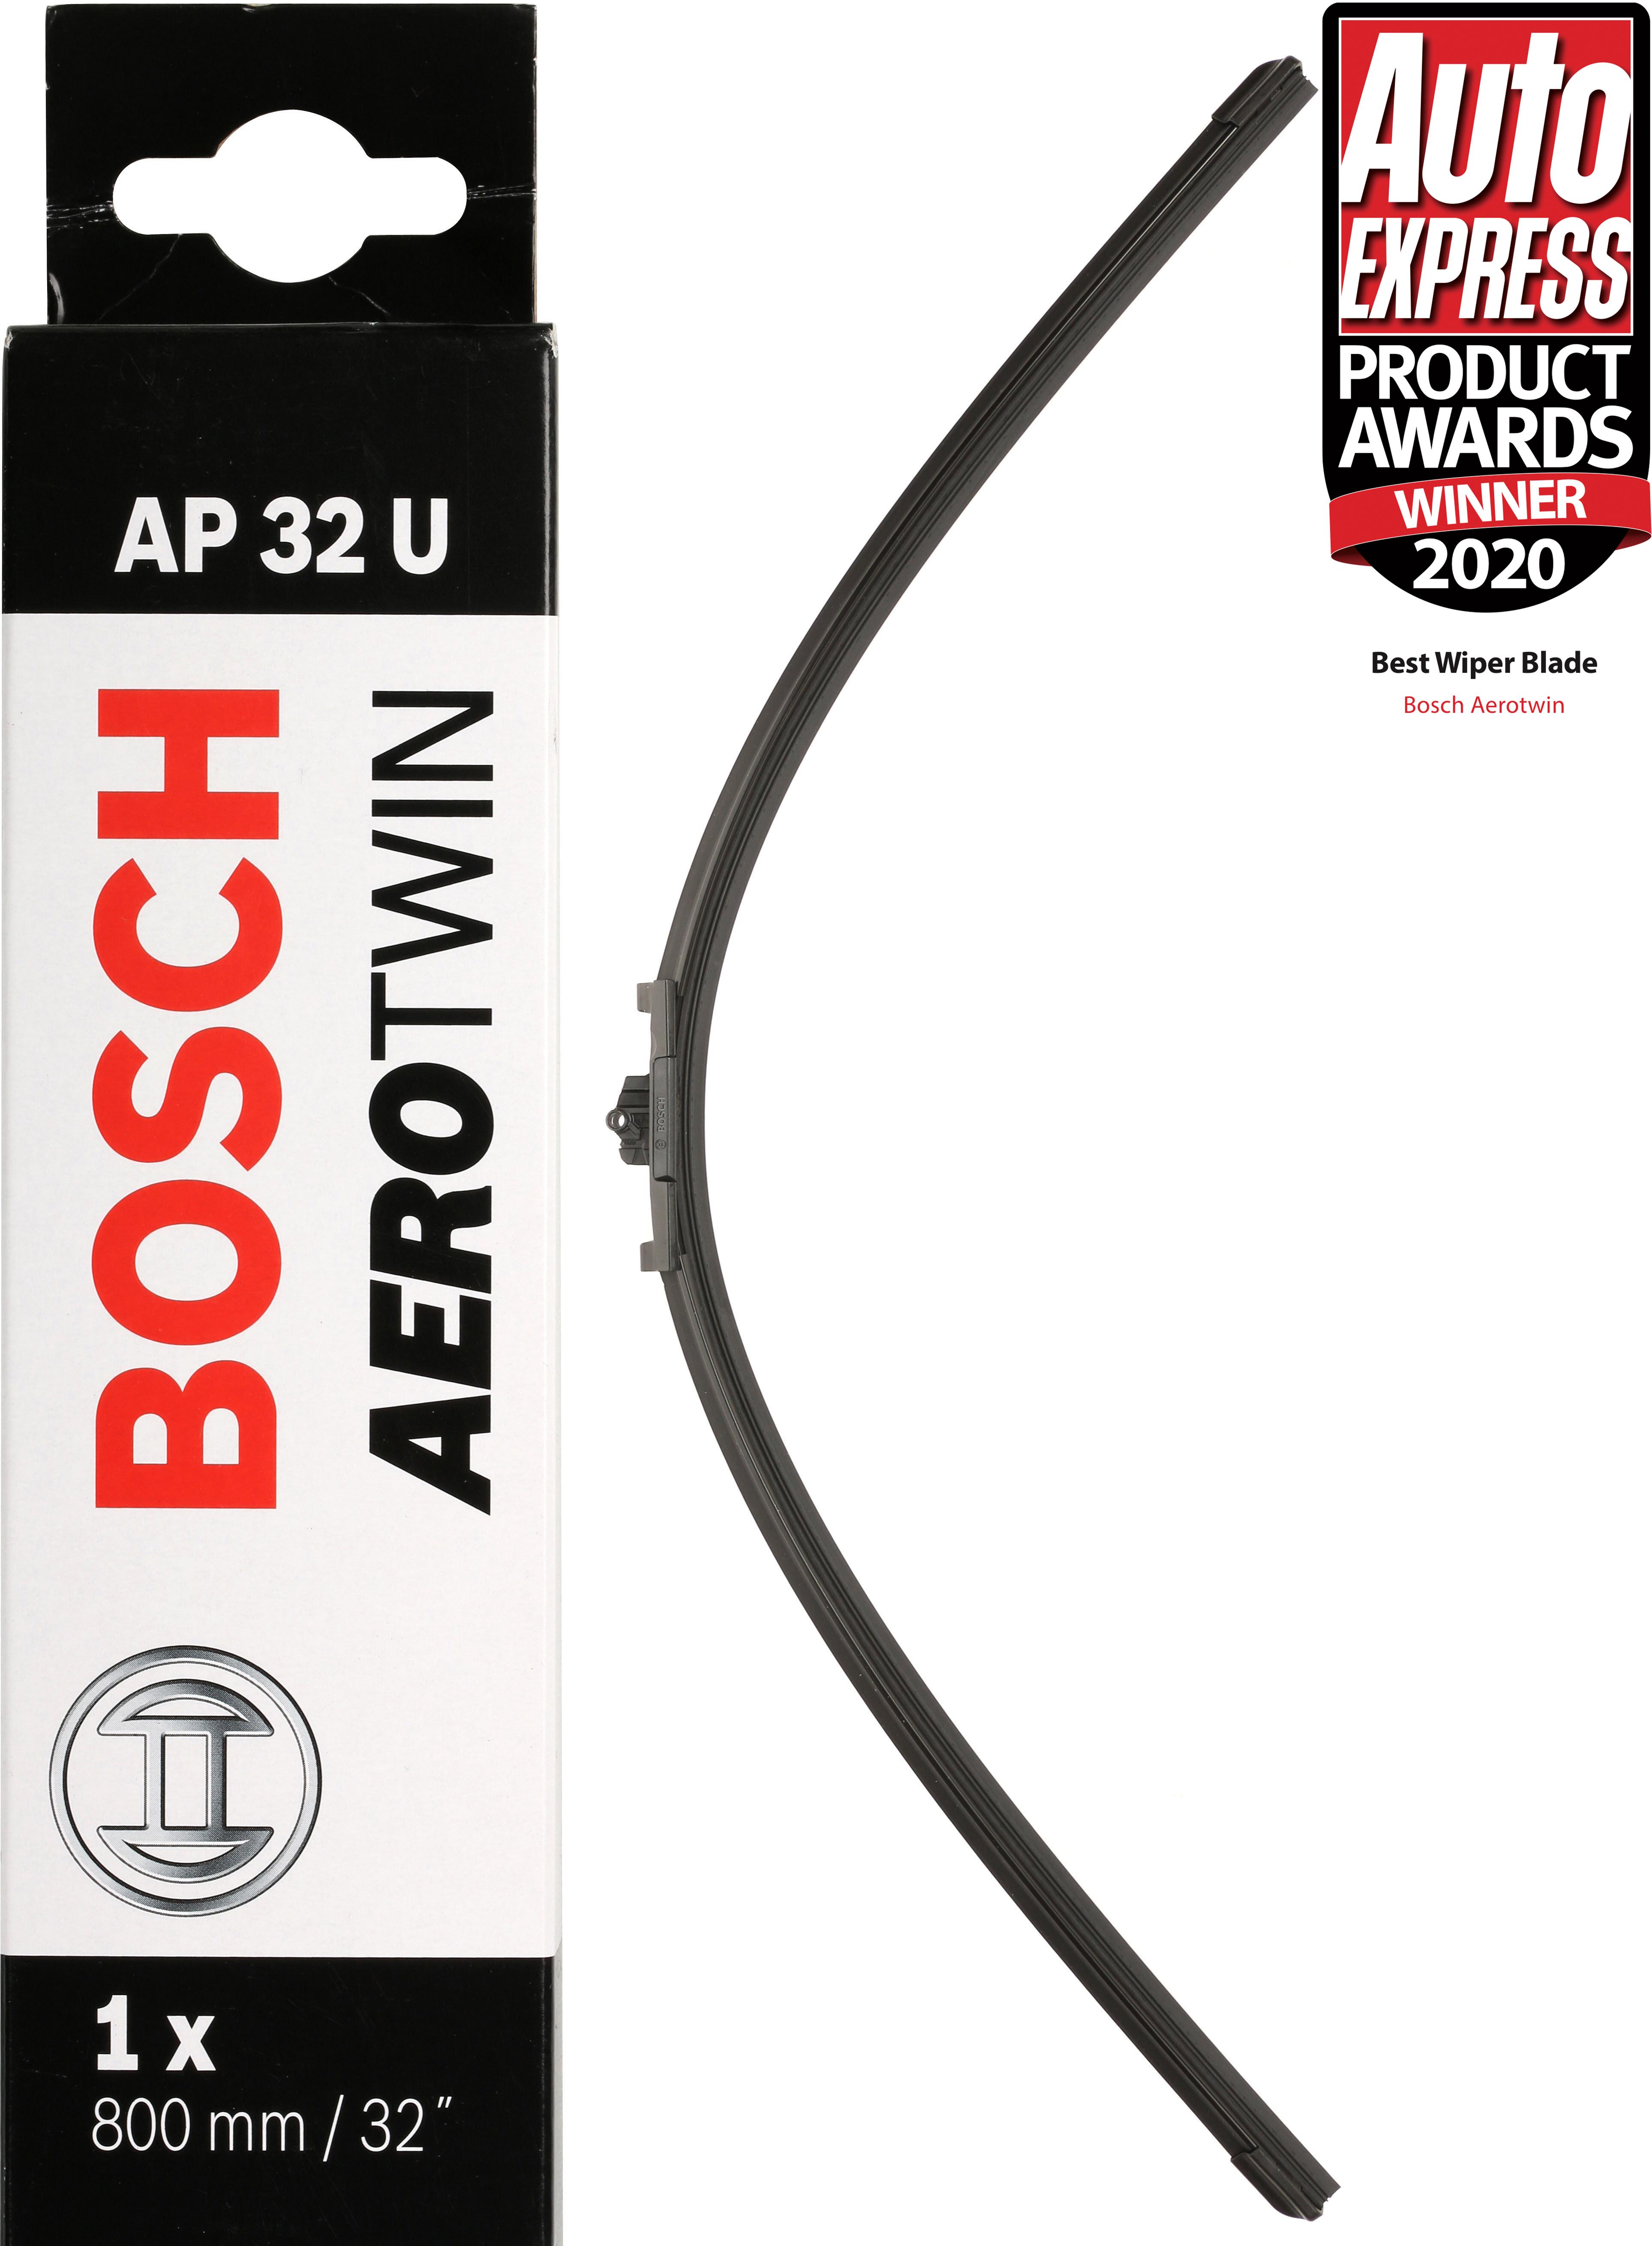 Bosch Ap32U Wiper Blade - Single